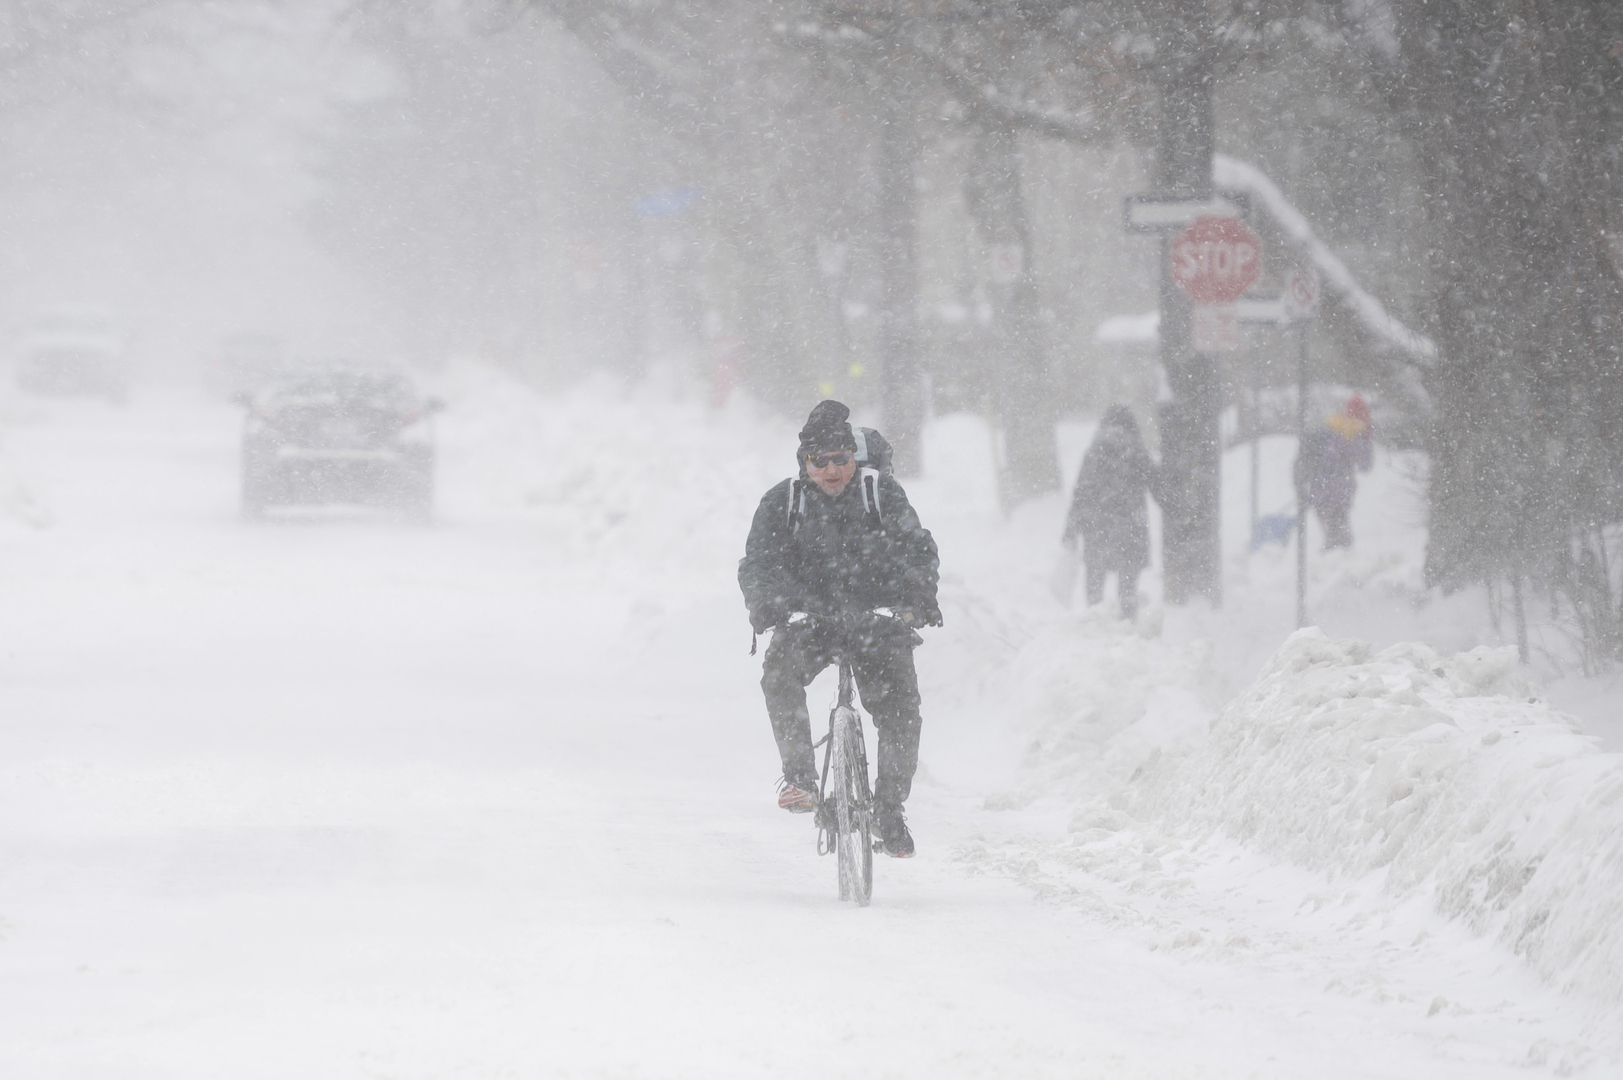 انقطاع الكهرباء عن 1.2 مليون شخص في كندا جراء العواصف الثلجية